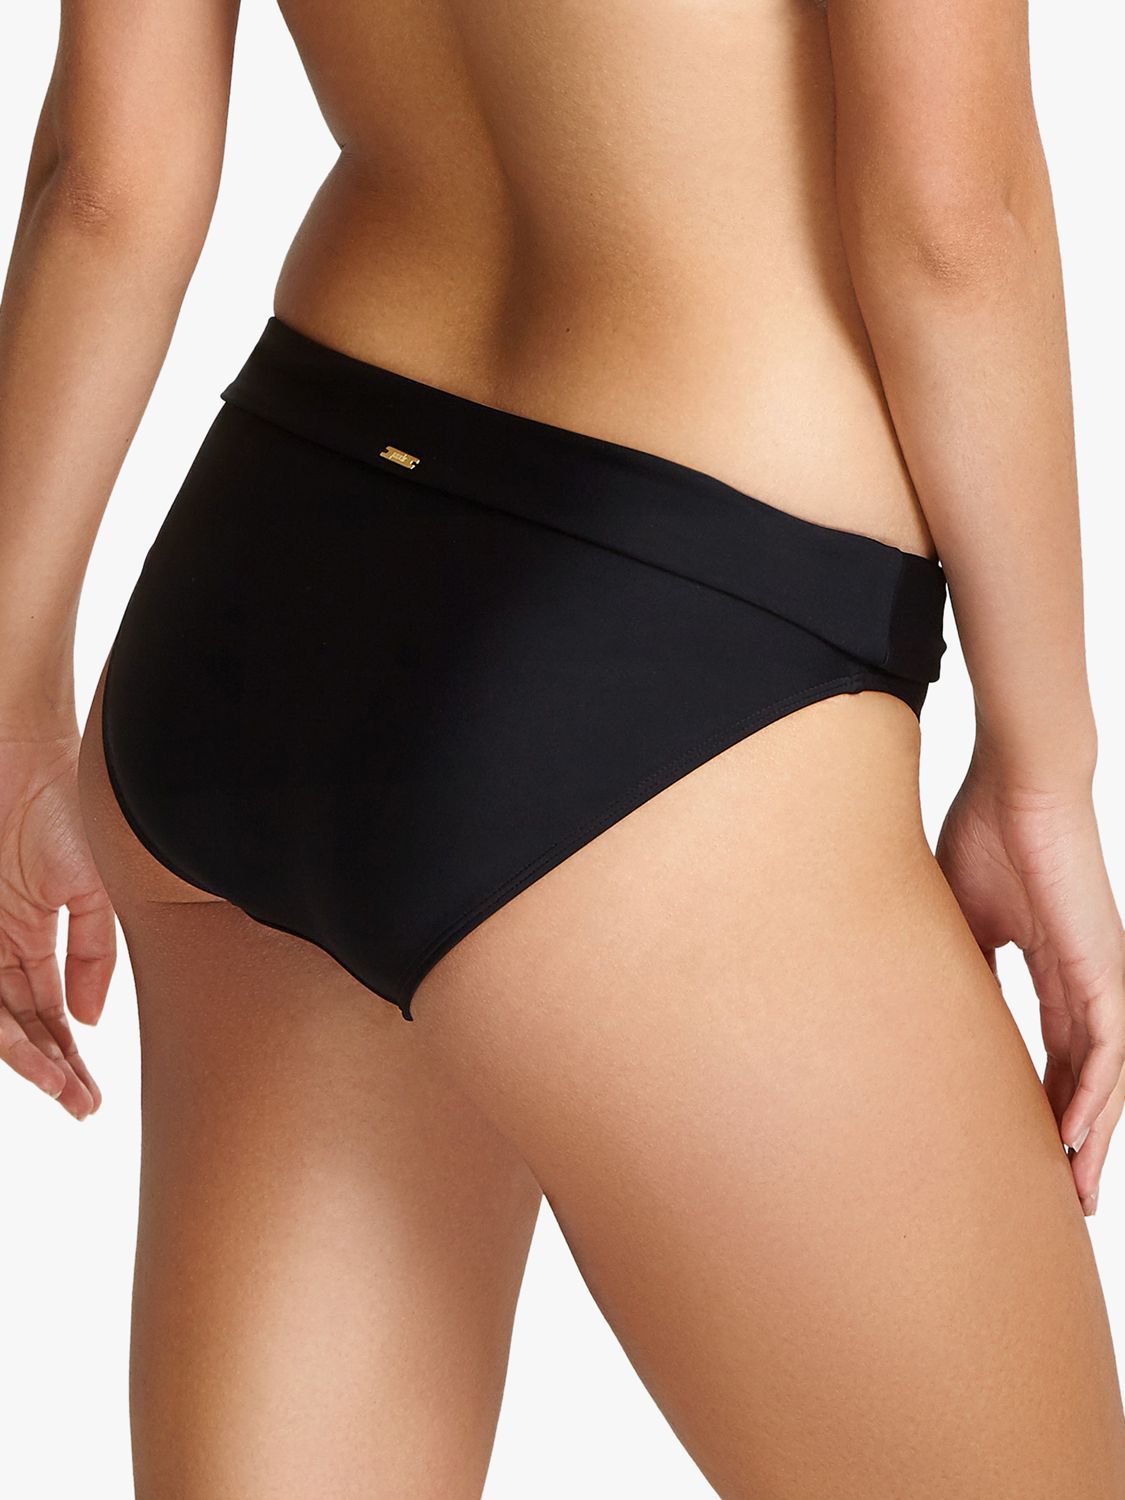 Panache Anya Riva Fold Top Bikini Bottoms, Black, 8